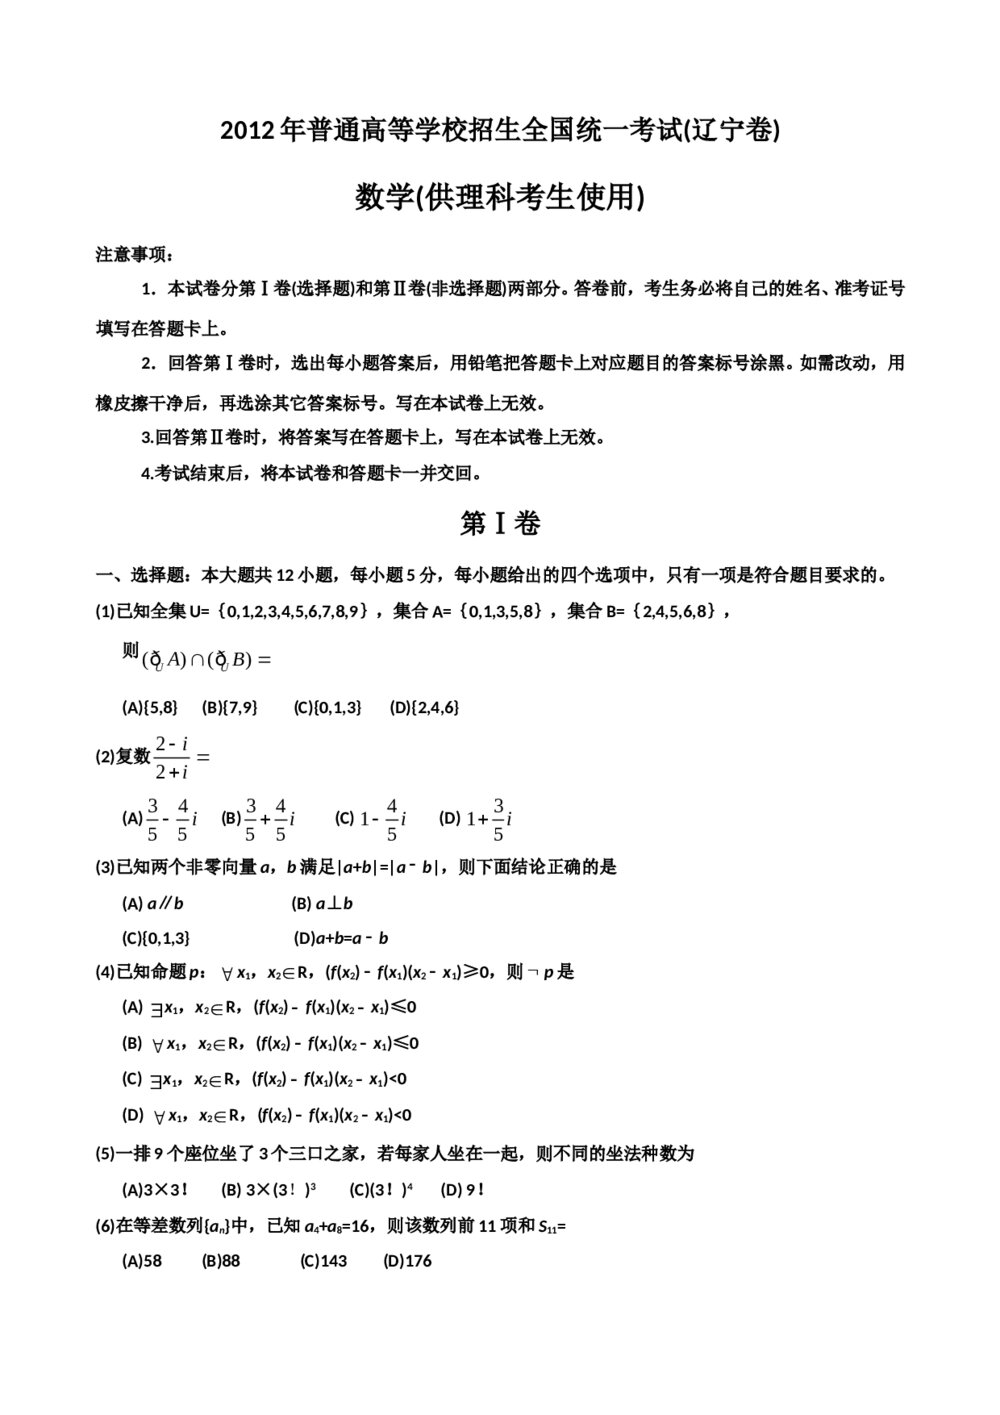 2012辽宁省高考数学(理科)试题试卷1